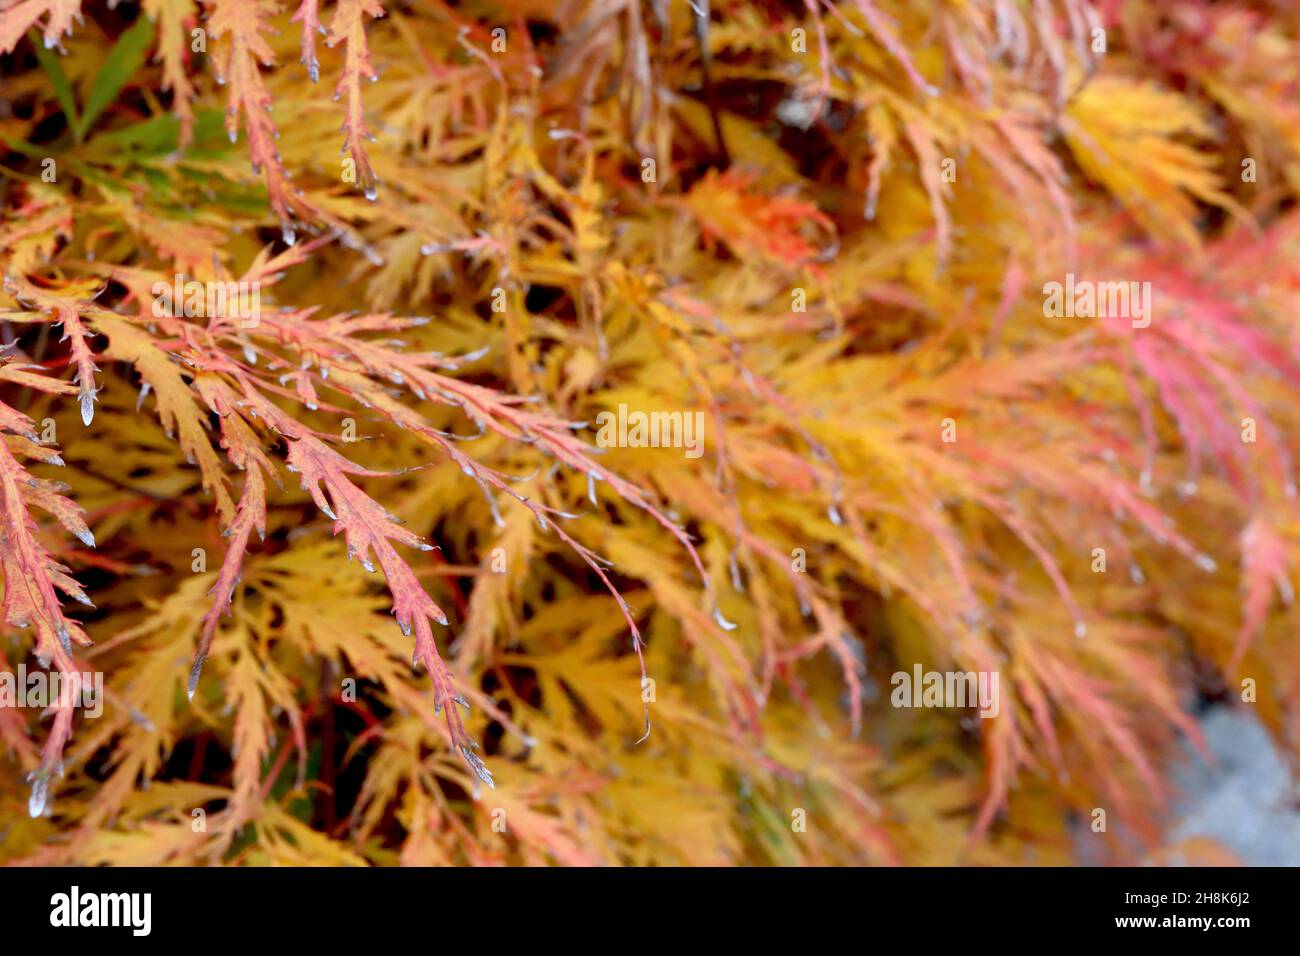 Acer palmatum dissectum ‘Viridis’ japanischer Cutleaf-Ahorn Viridis – fein zerschnittete orange-gelbe Blätter, November, England, Großbritannien Stockfoto